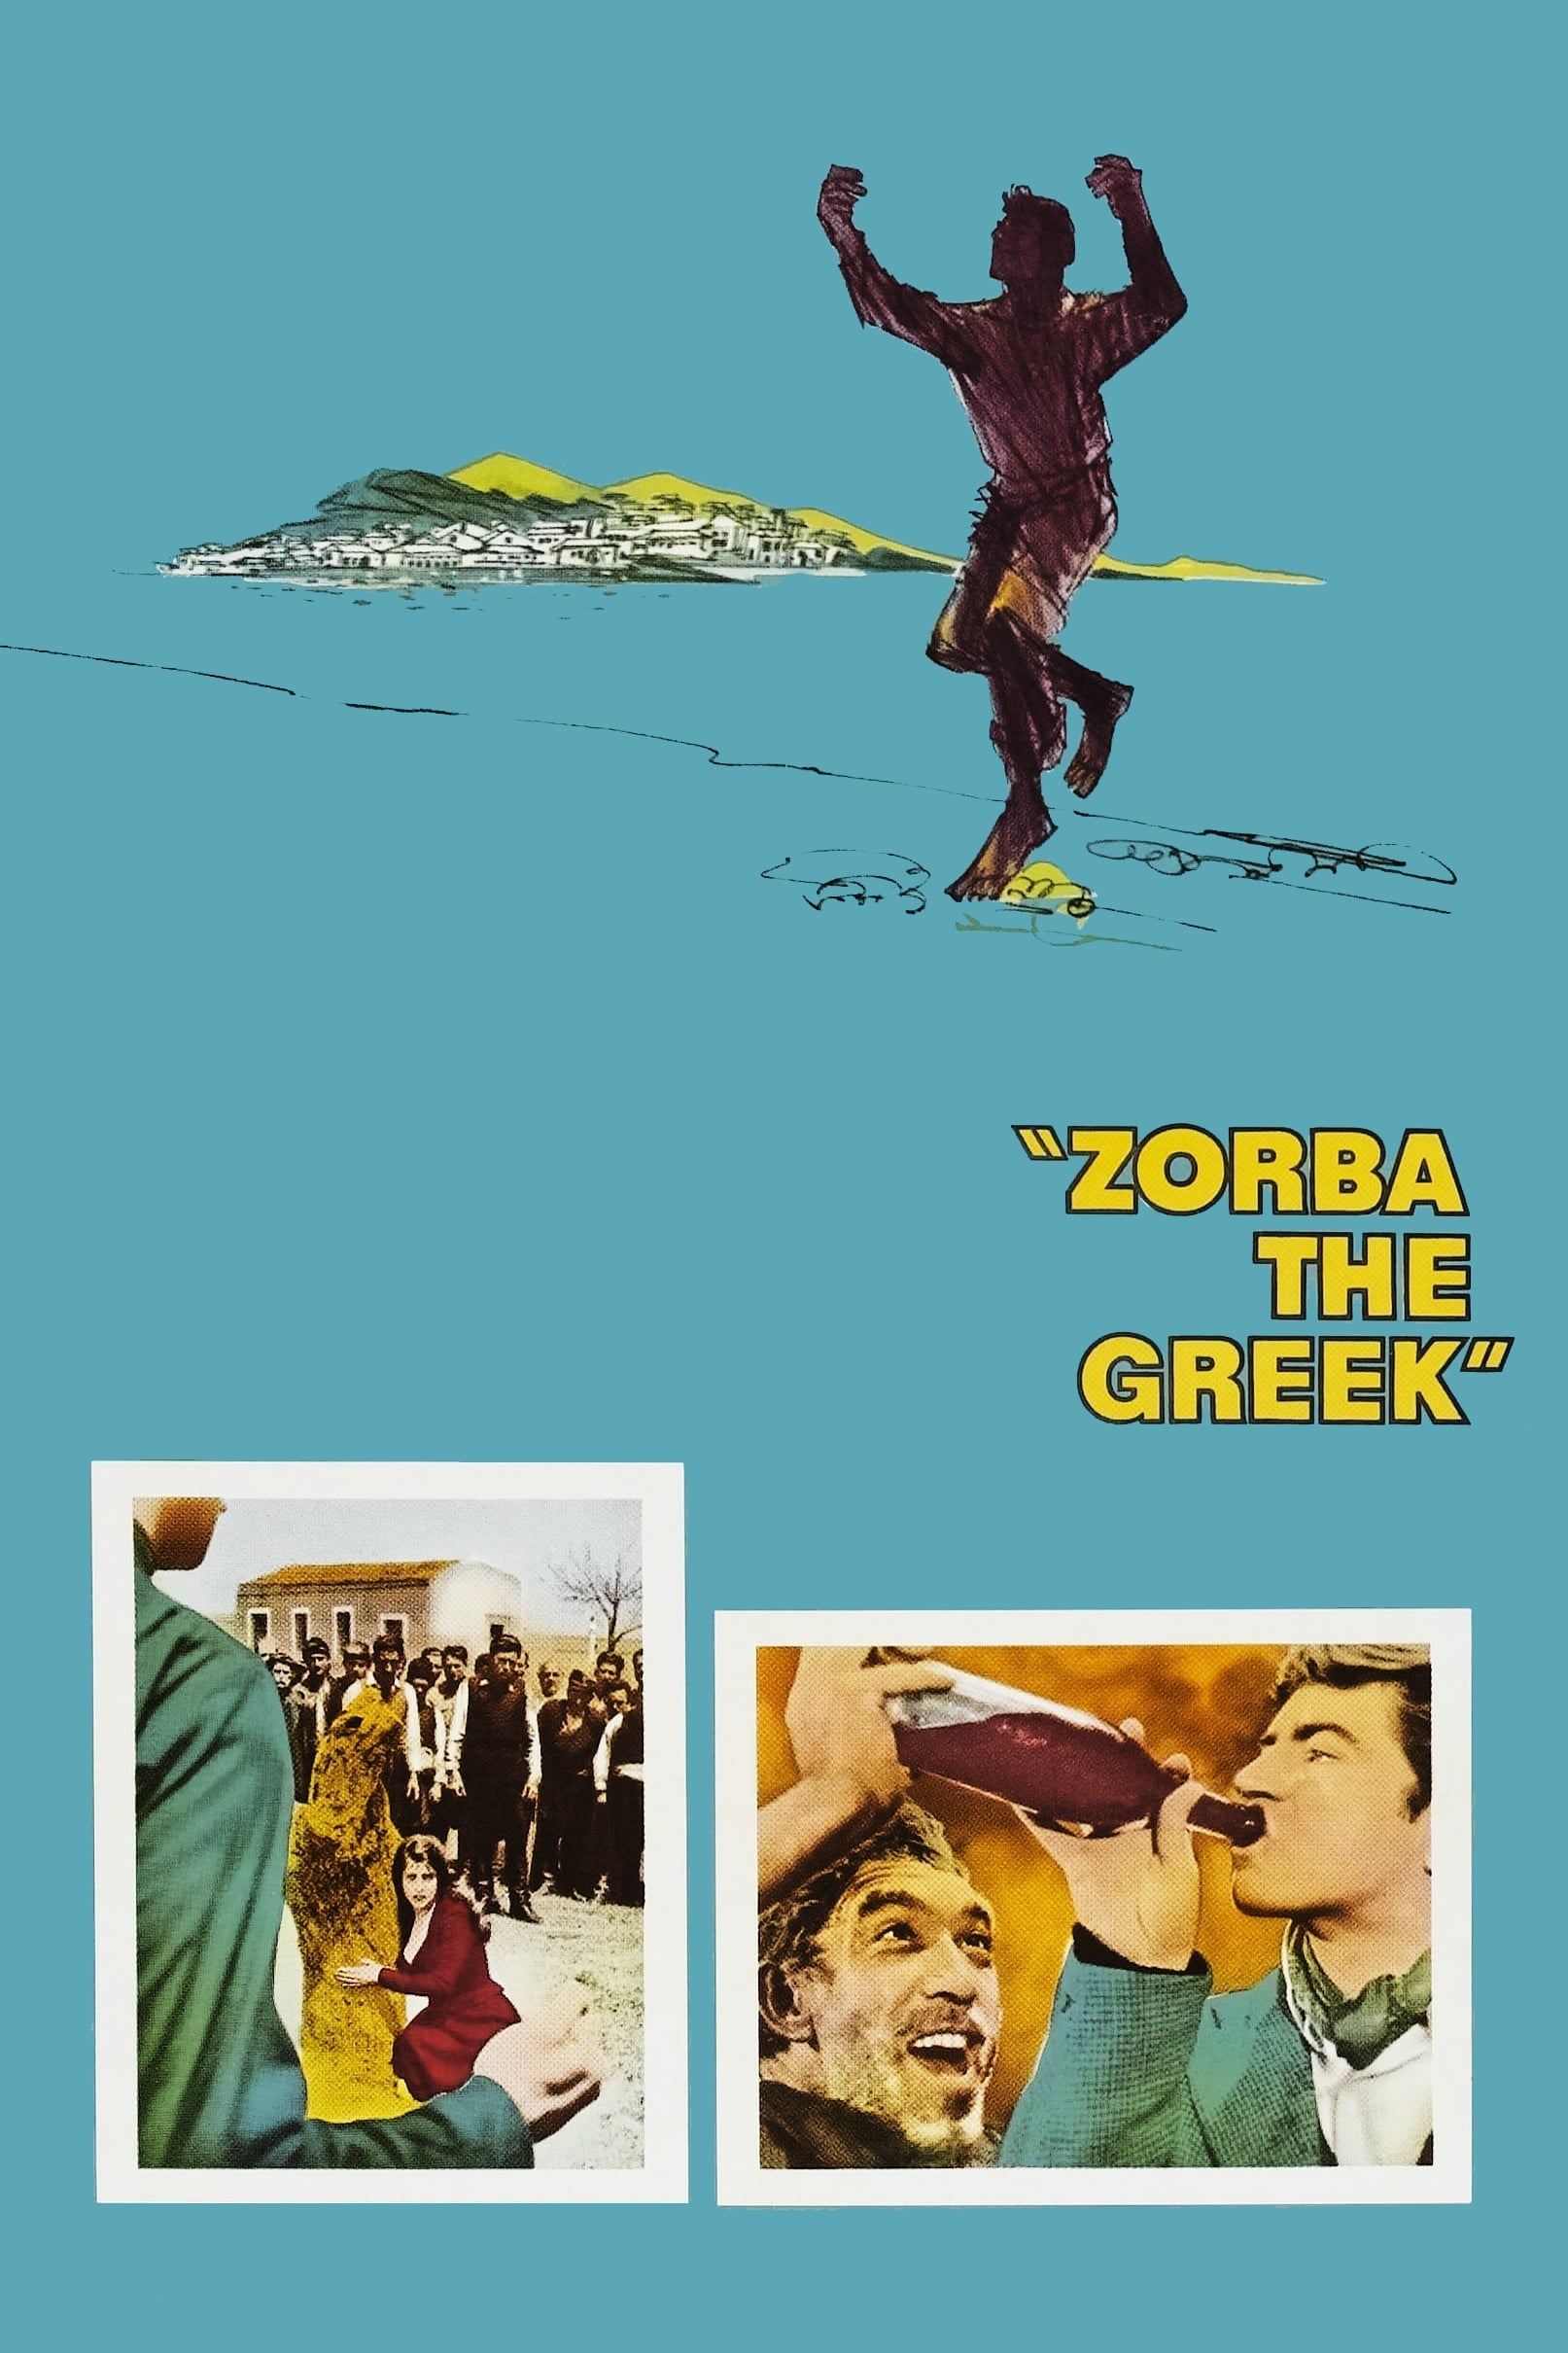 Zorba el griego (1964)